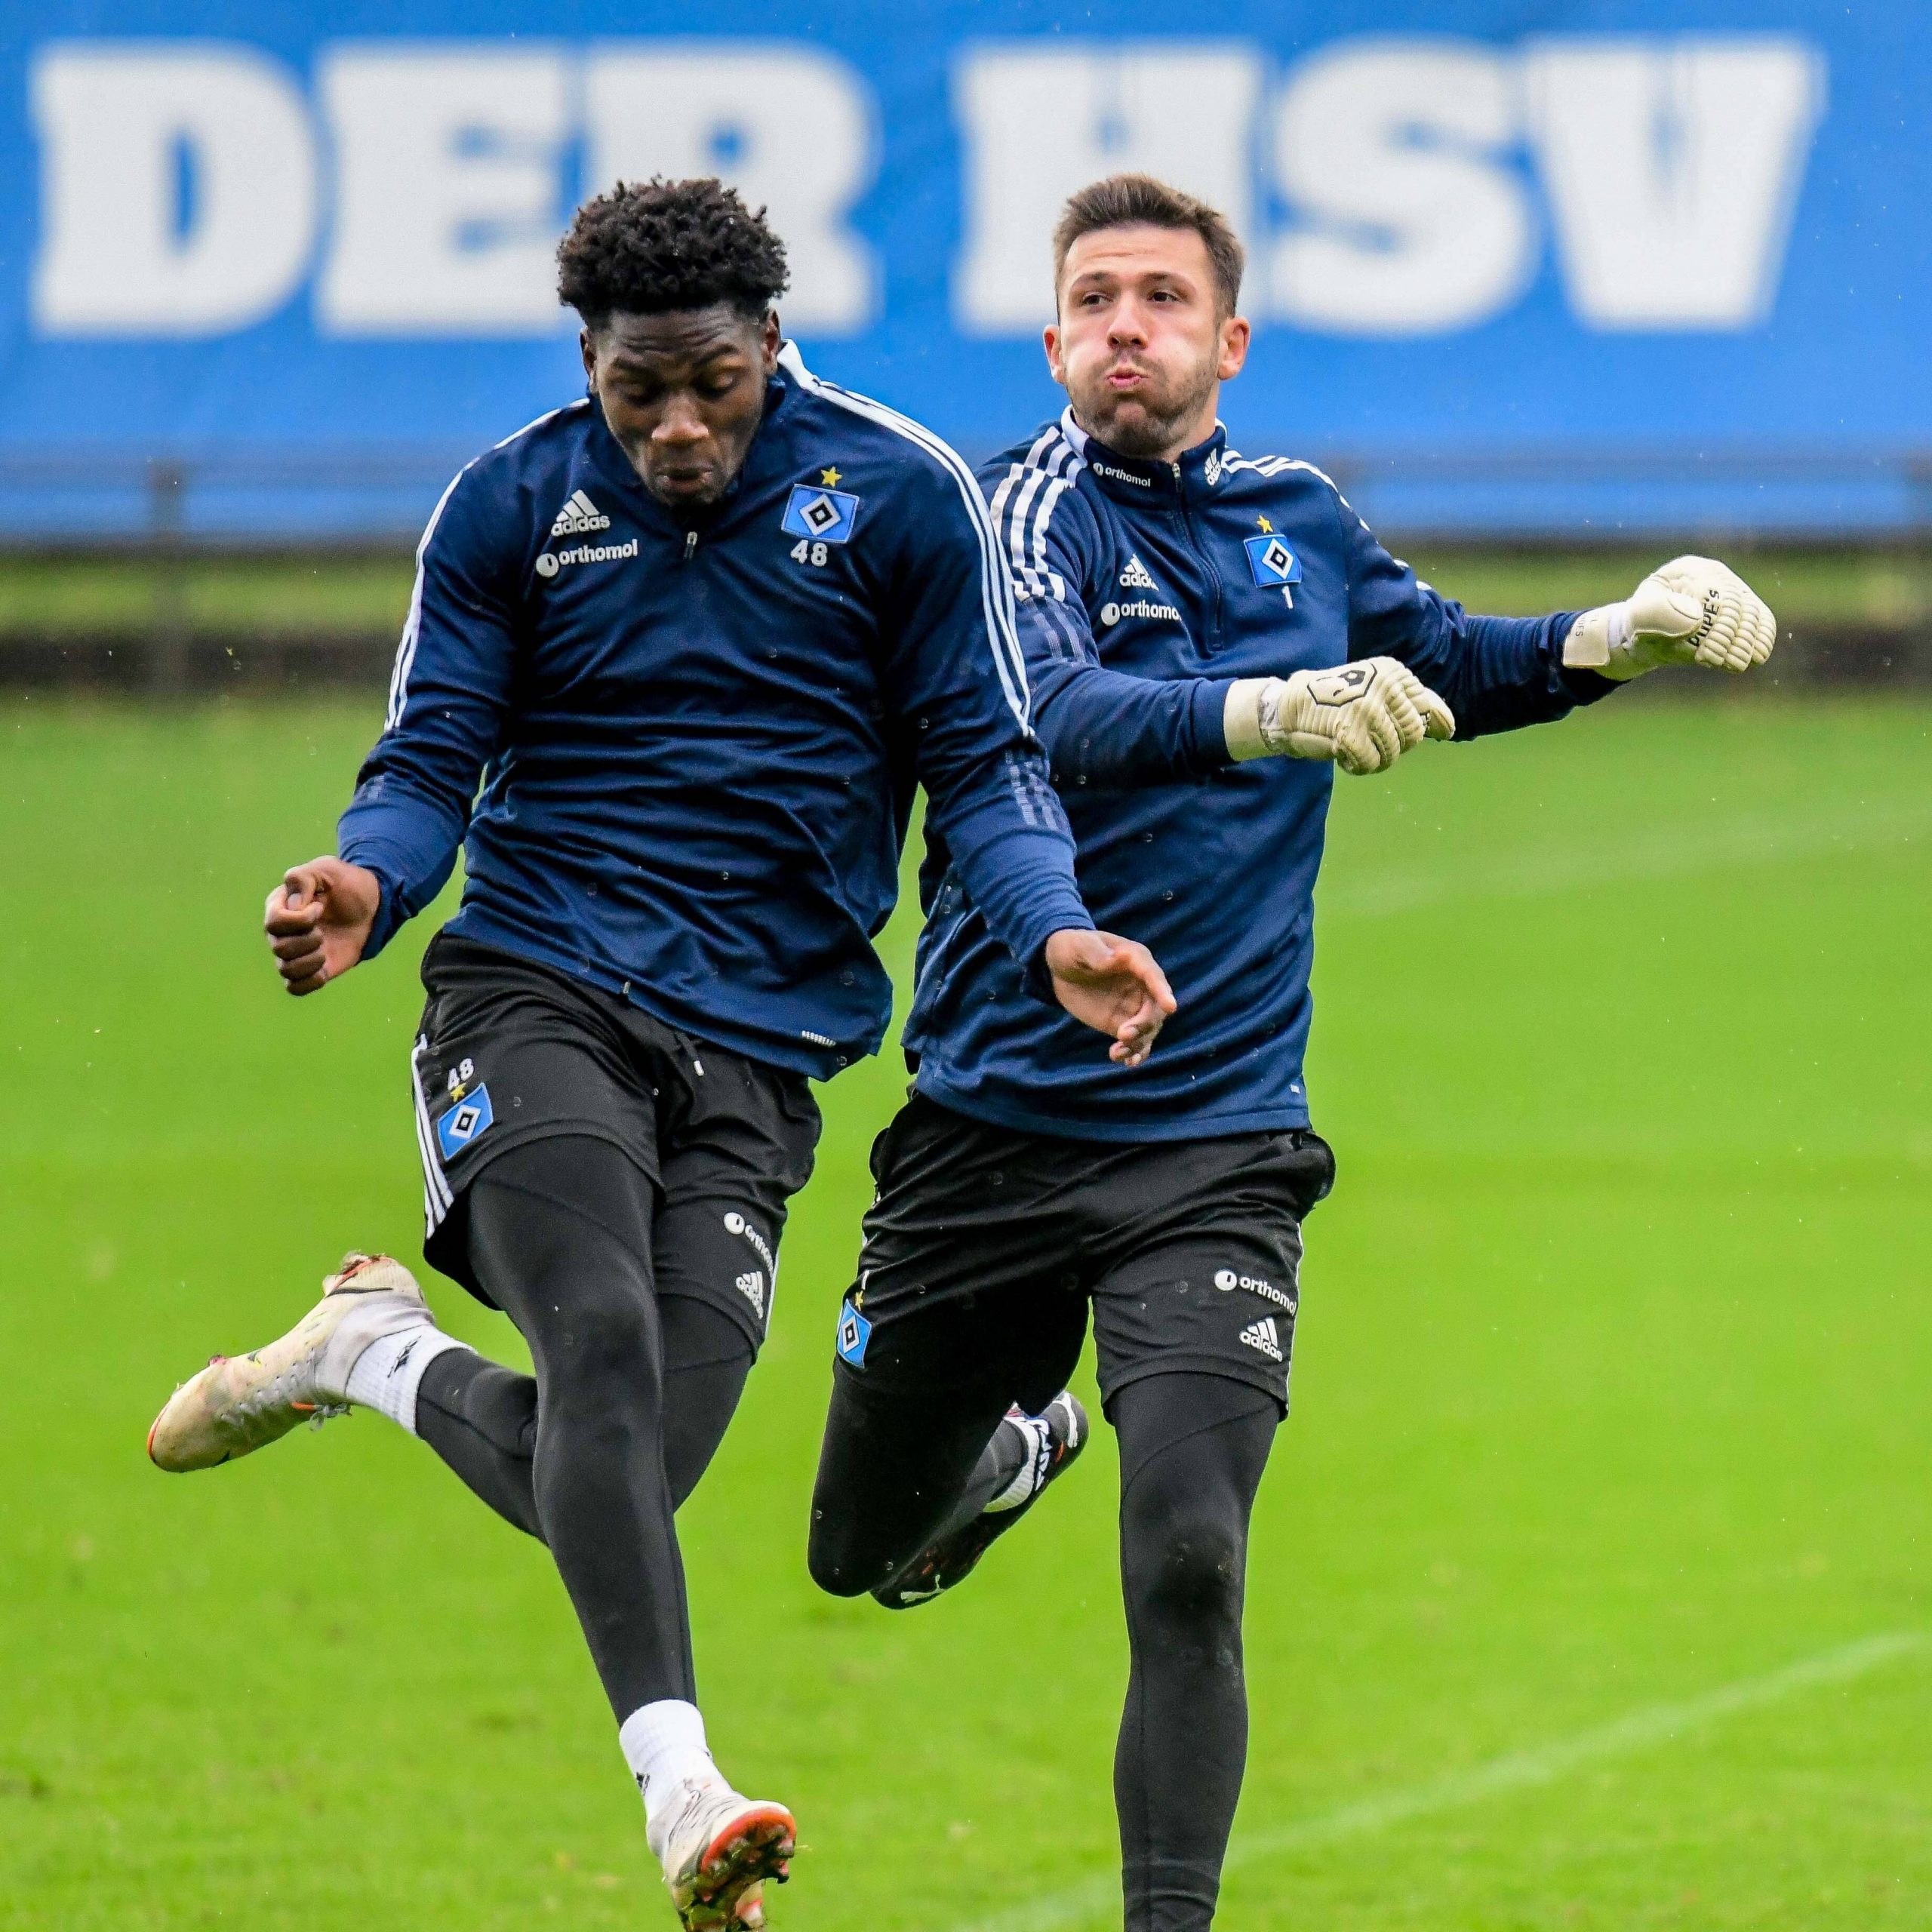 Nachwuchskicker Faride Alidou und Torwart Daniel Heuer Fernandes gehören bislang zu den HSV-Gewinnern in dieser Saison.